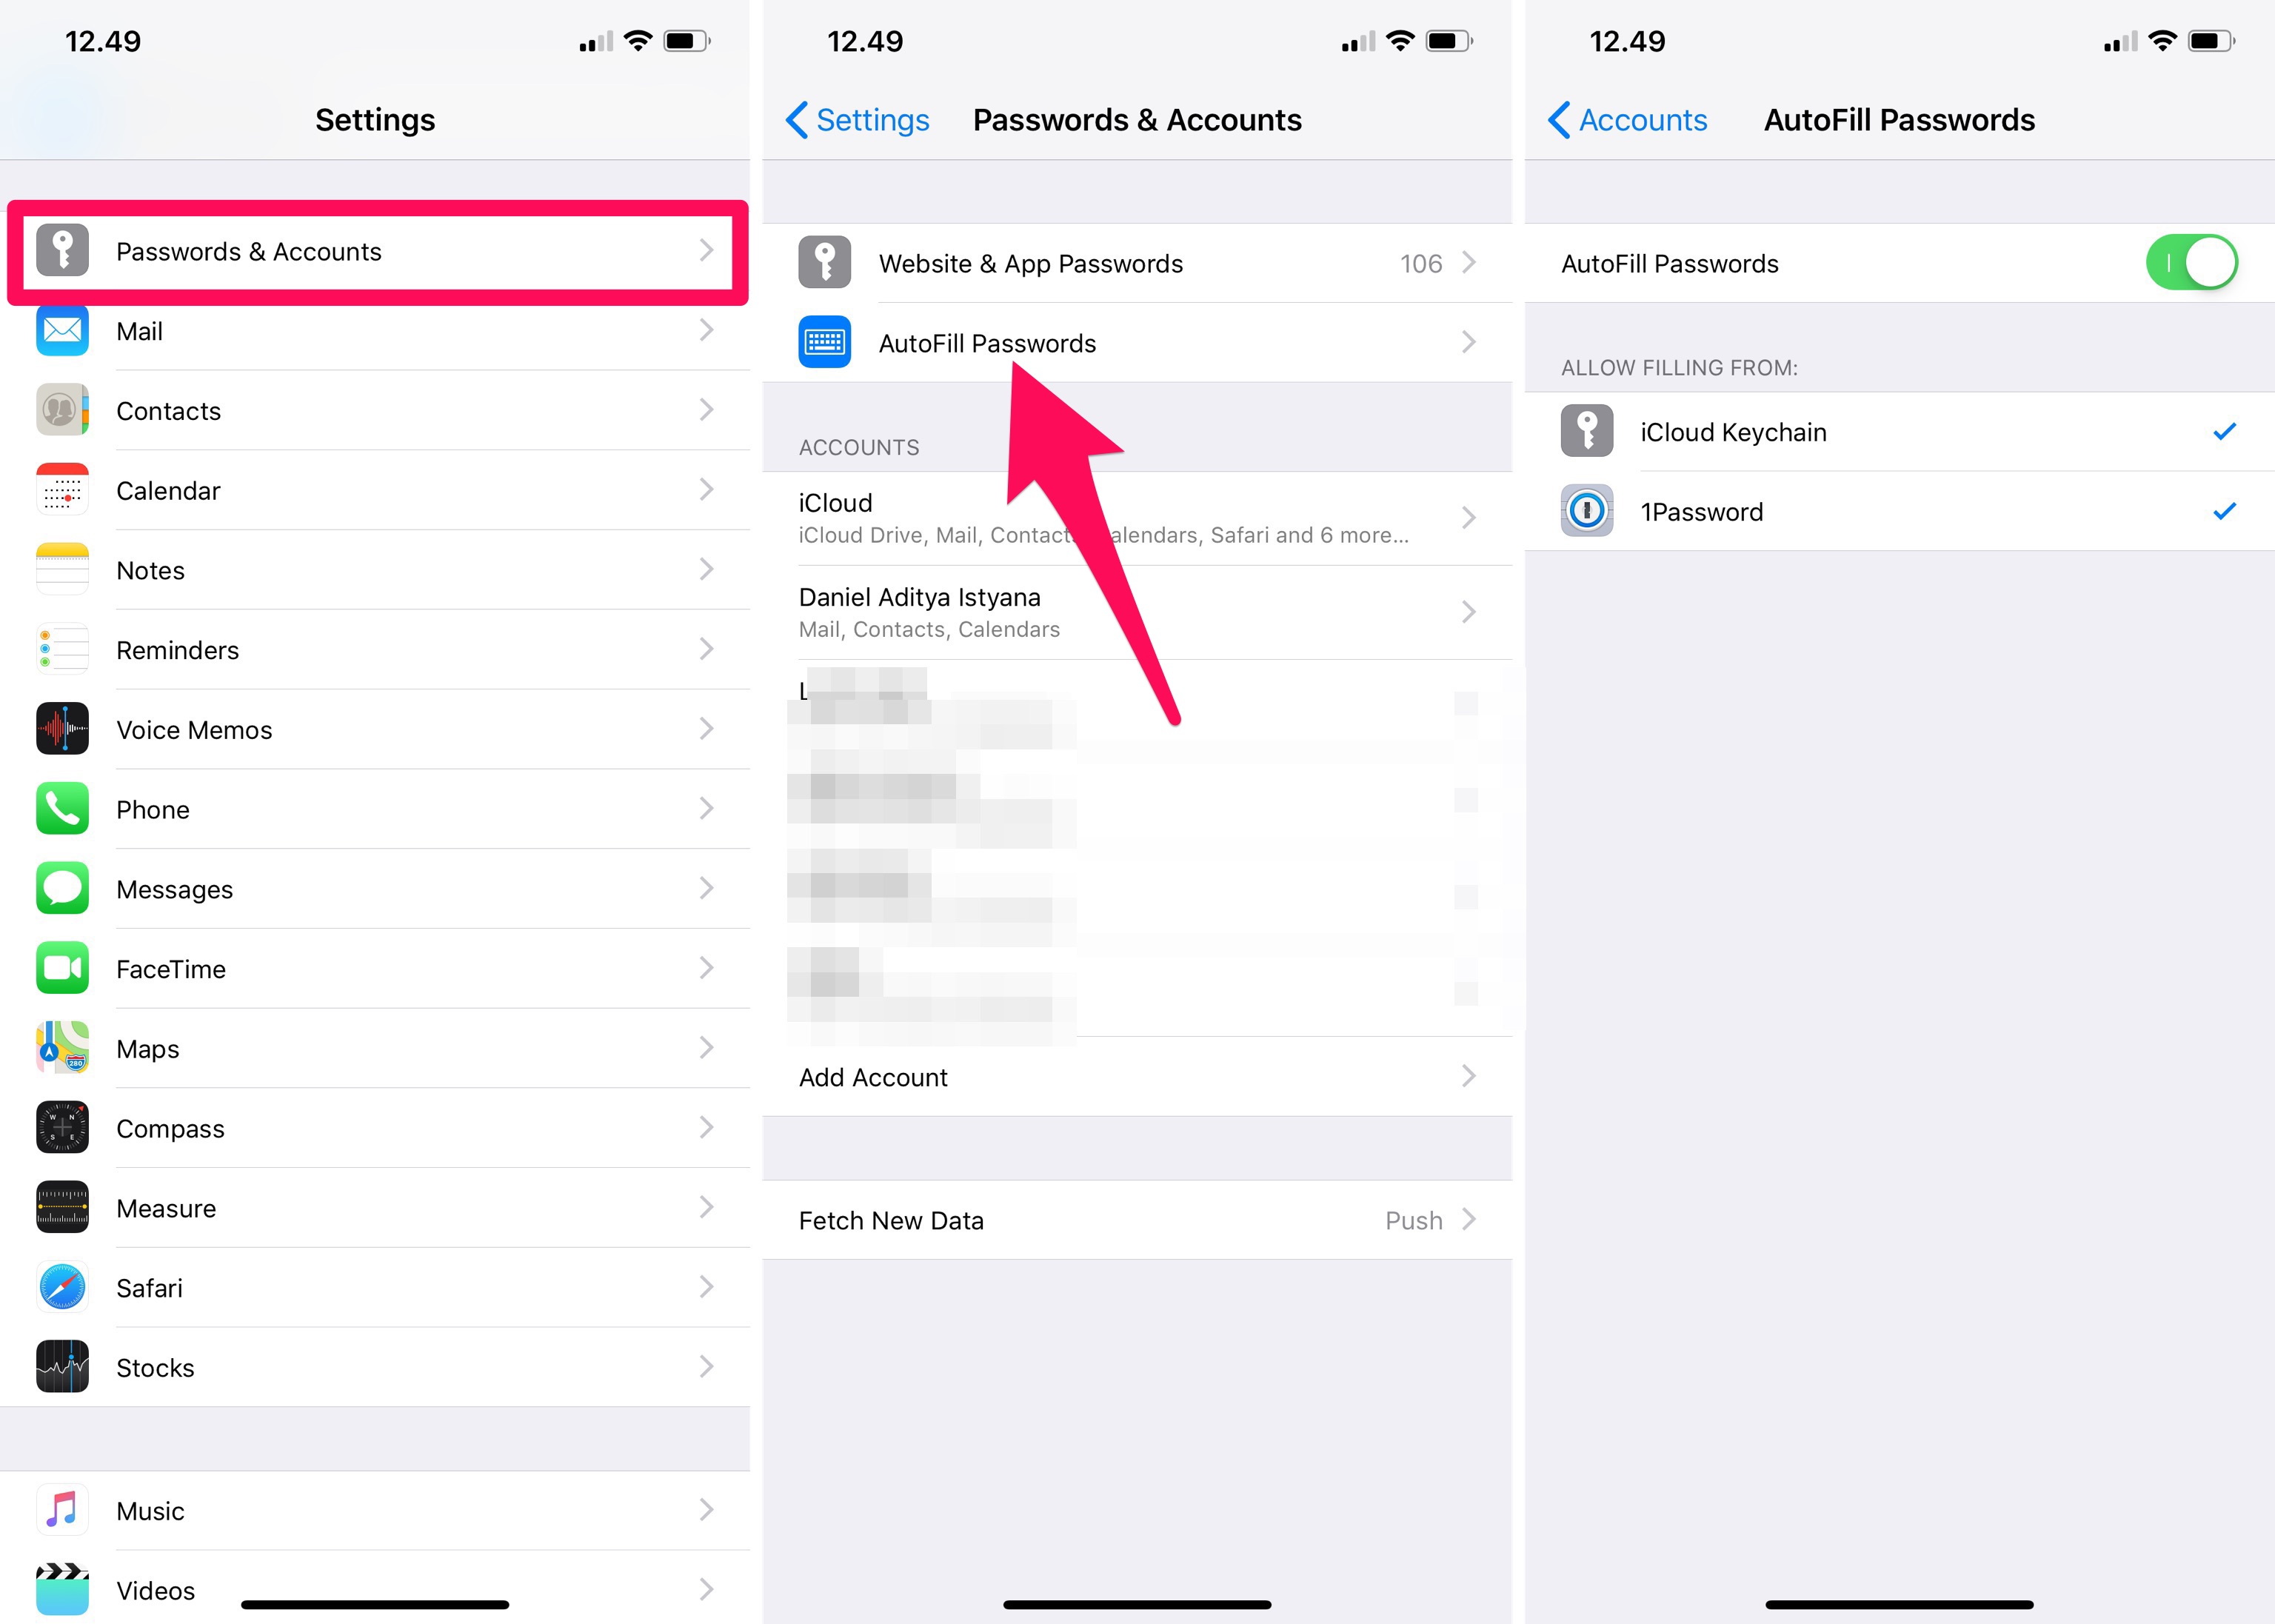 Cara menggunakan fitur AutoFill Passwords di iOS 12